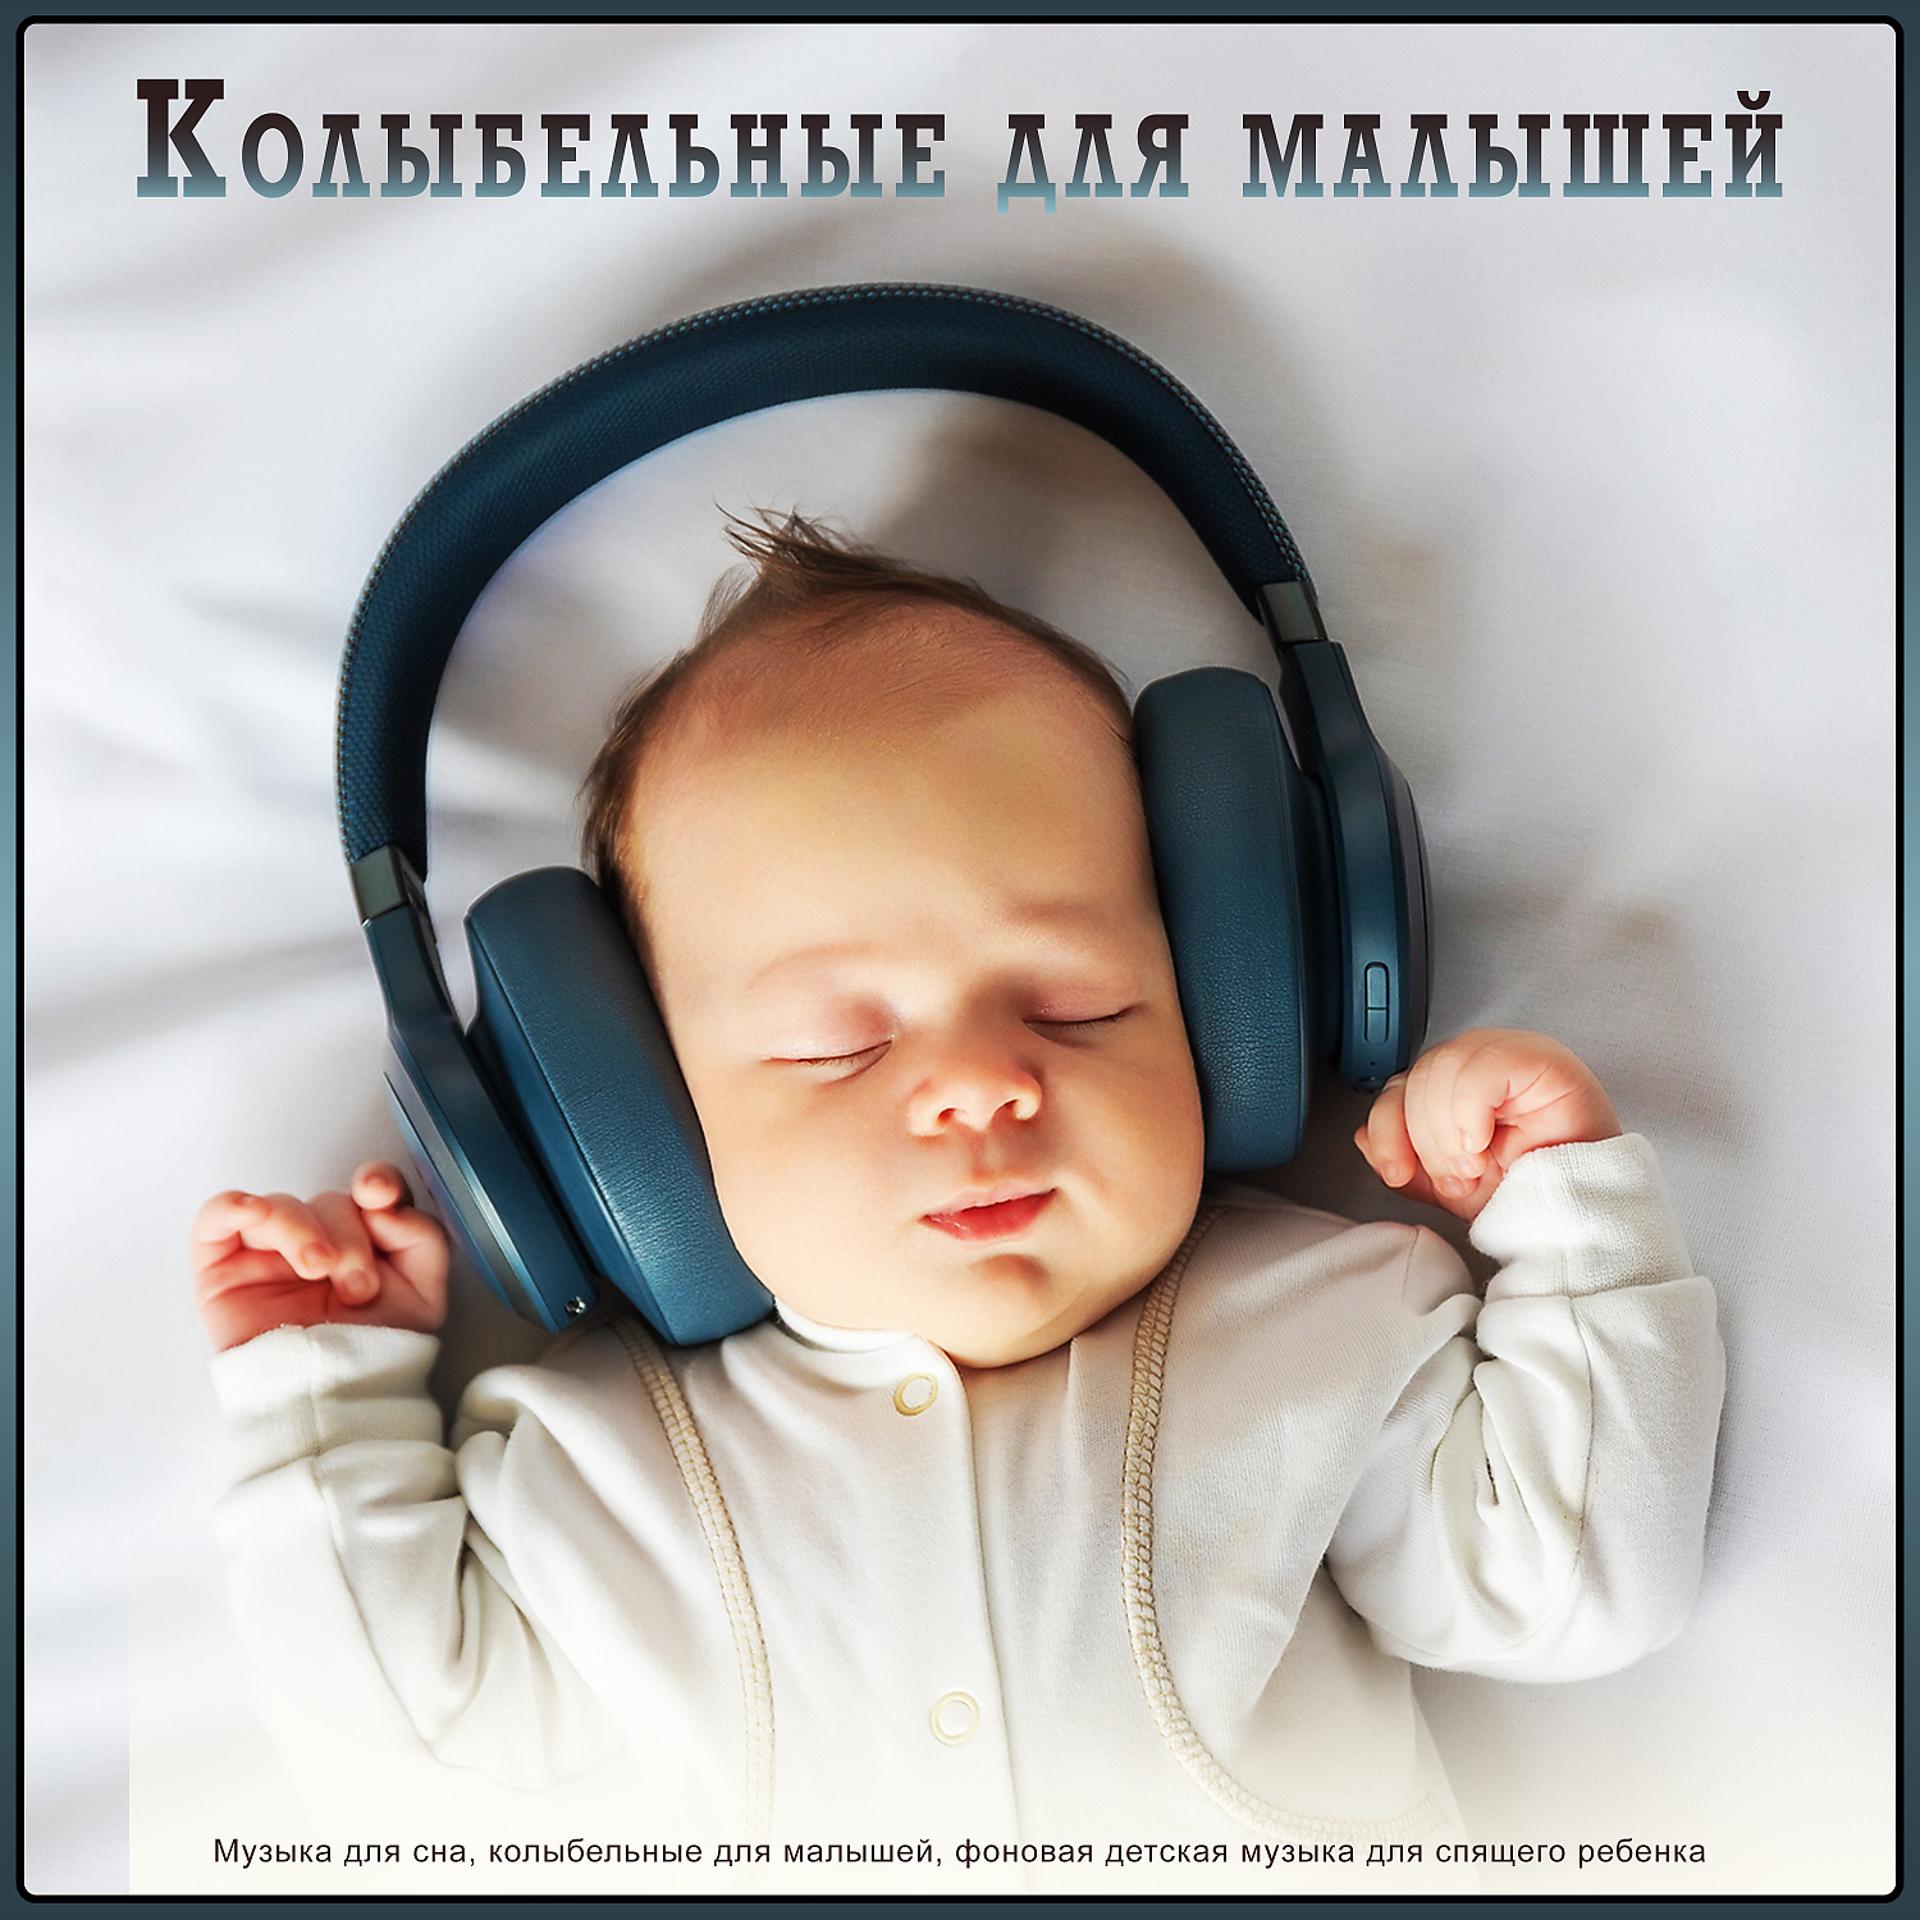 Музыка для быстрого сна детям. Музыка для сна младенца. Музыка для сна для малышей. Мелодии для засыпания малышей. Колыбельная для малышей успокаивающая.